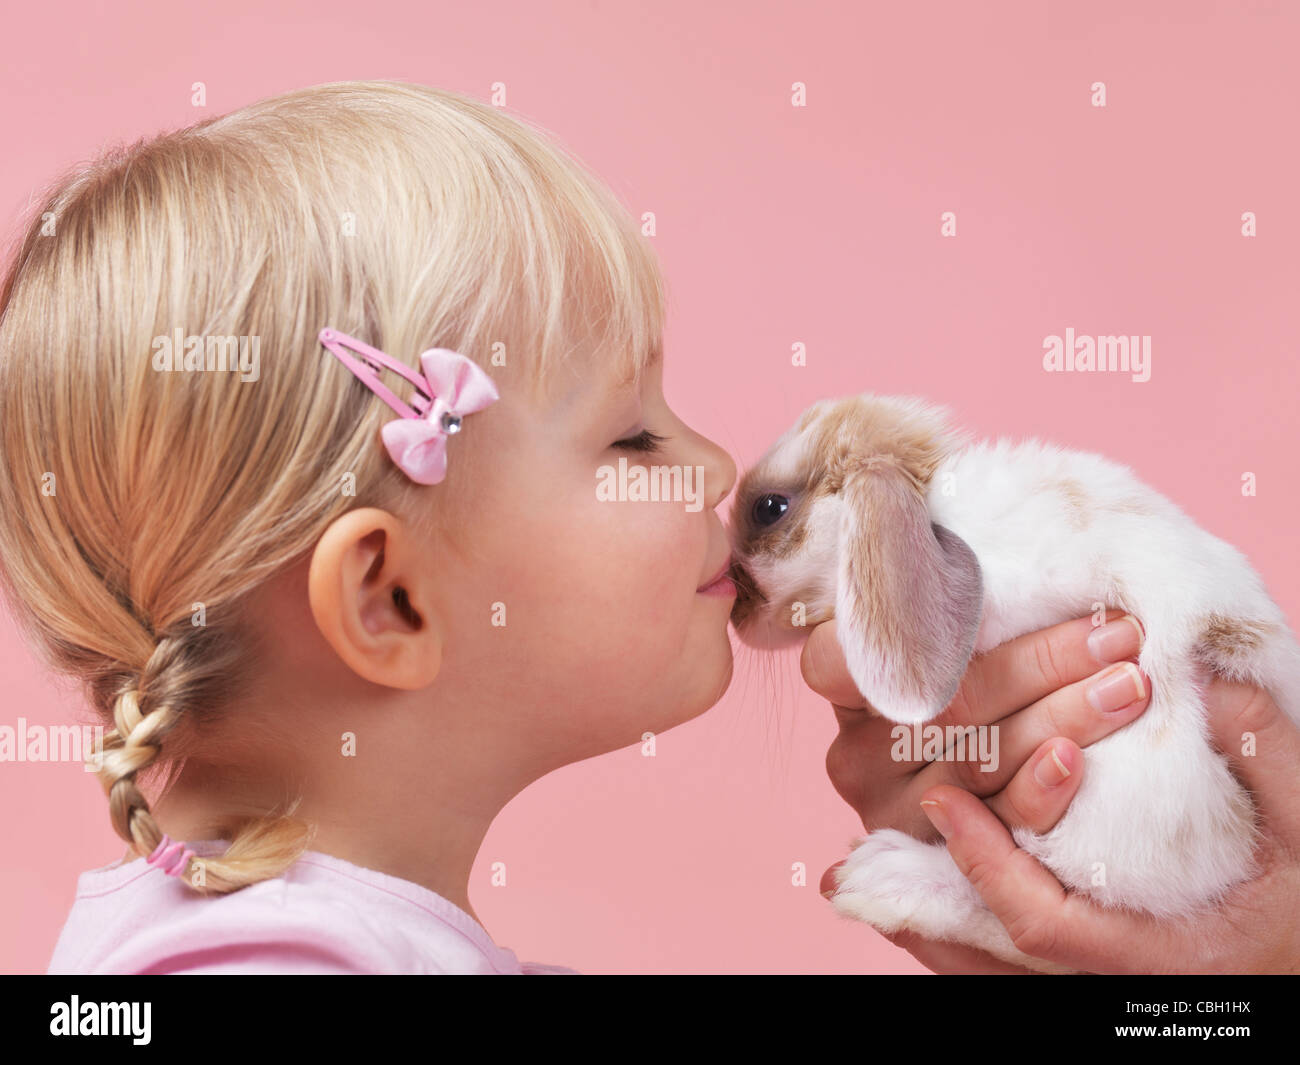 Niedliche 3 jährige Mädchen küssen ein Haustier Kaninchen isoliert auf rosa Hintergrund Stockfoto